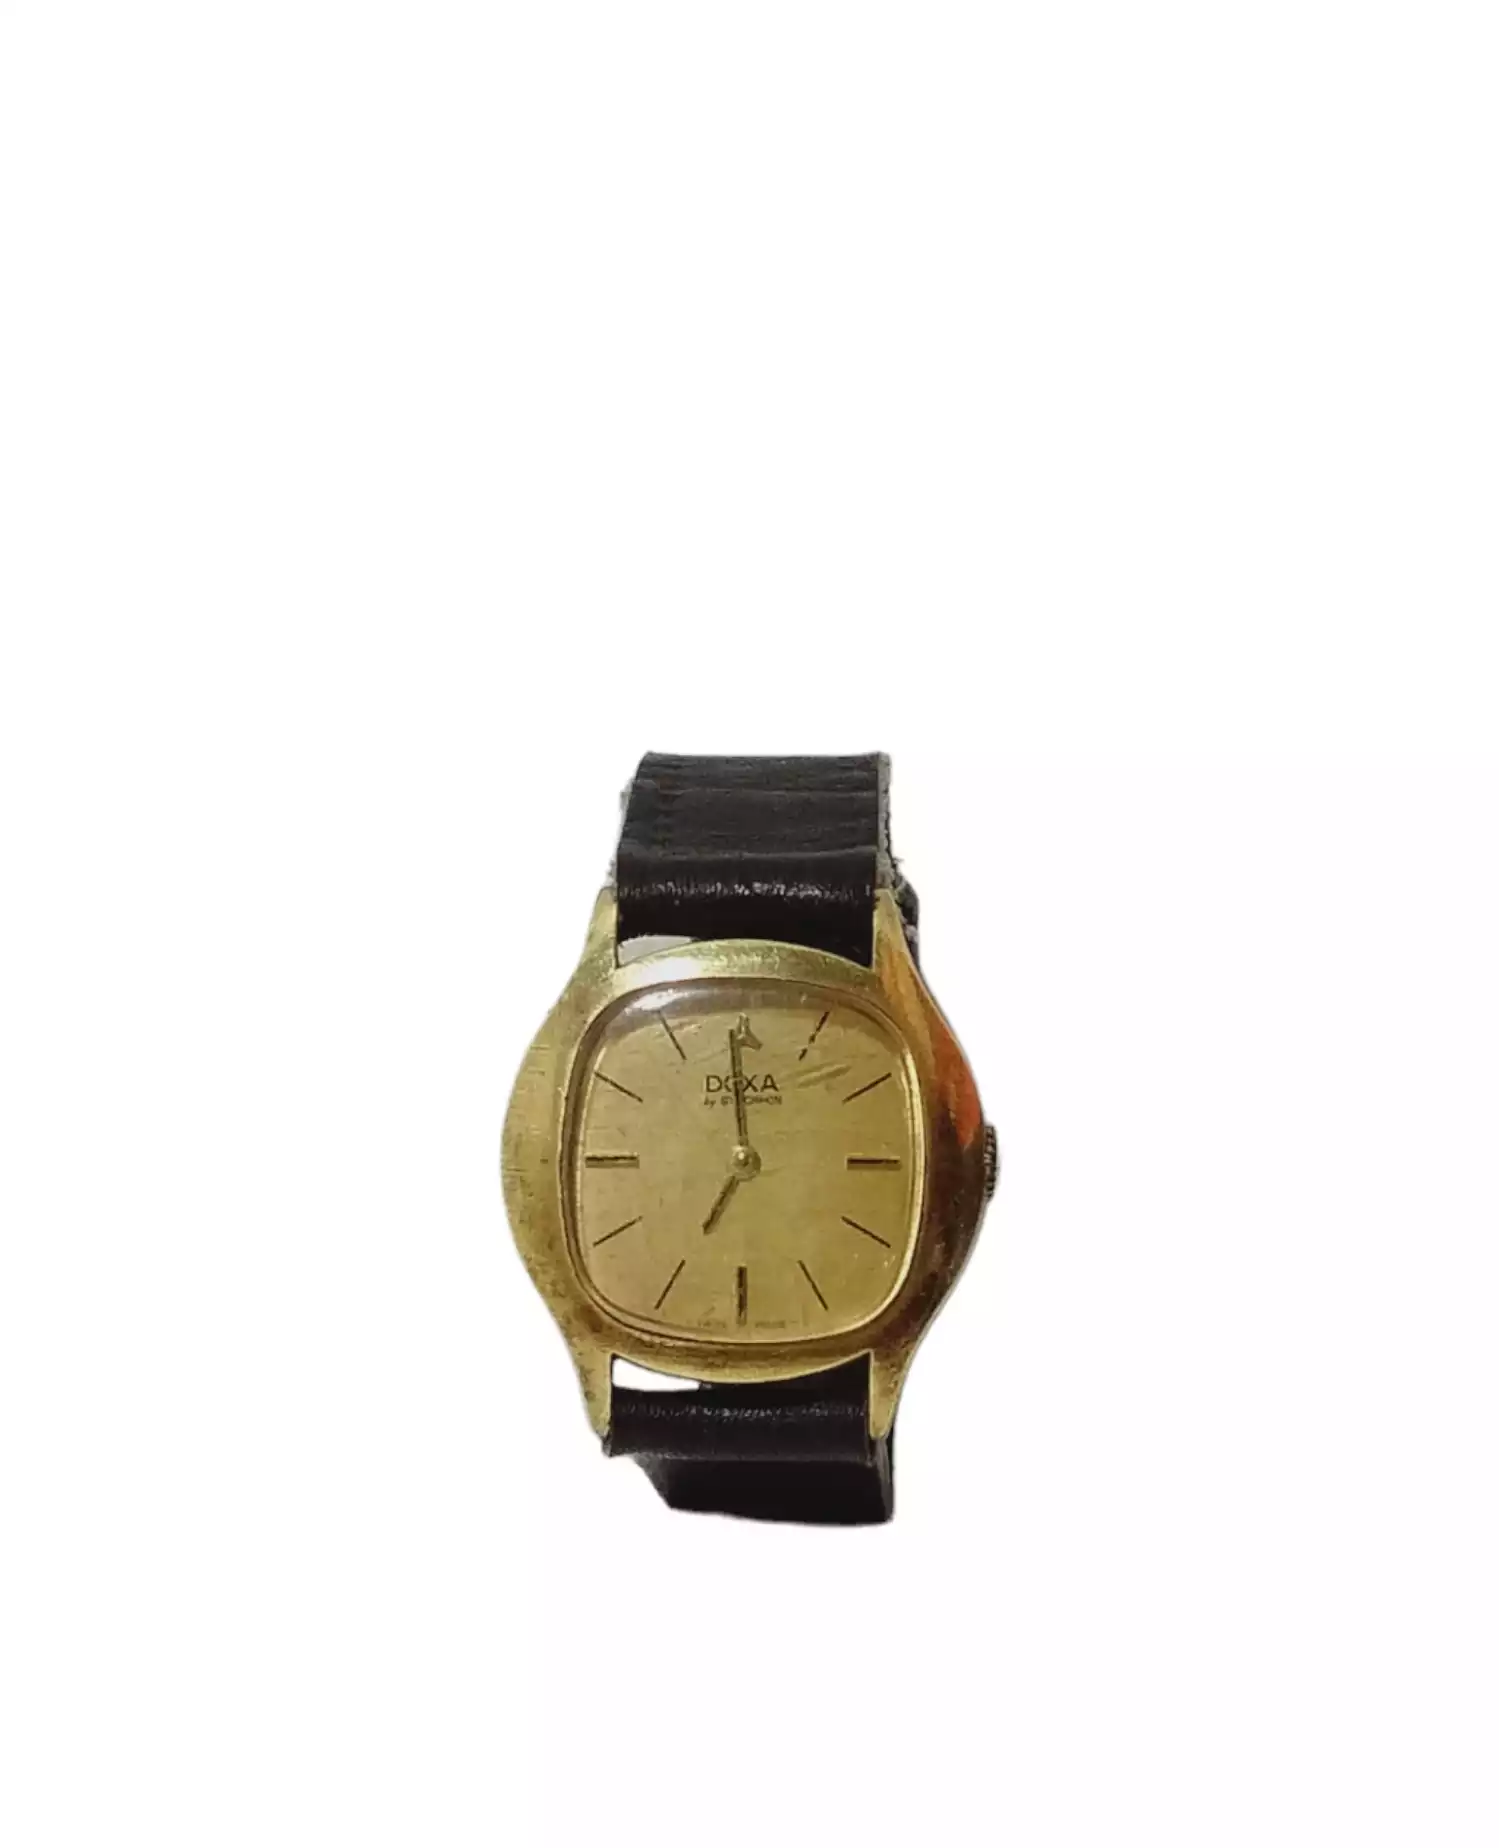 Vintage Watch by Doxa